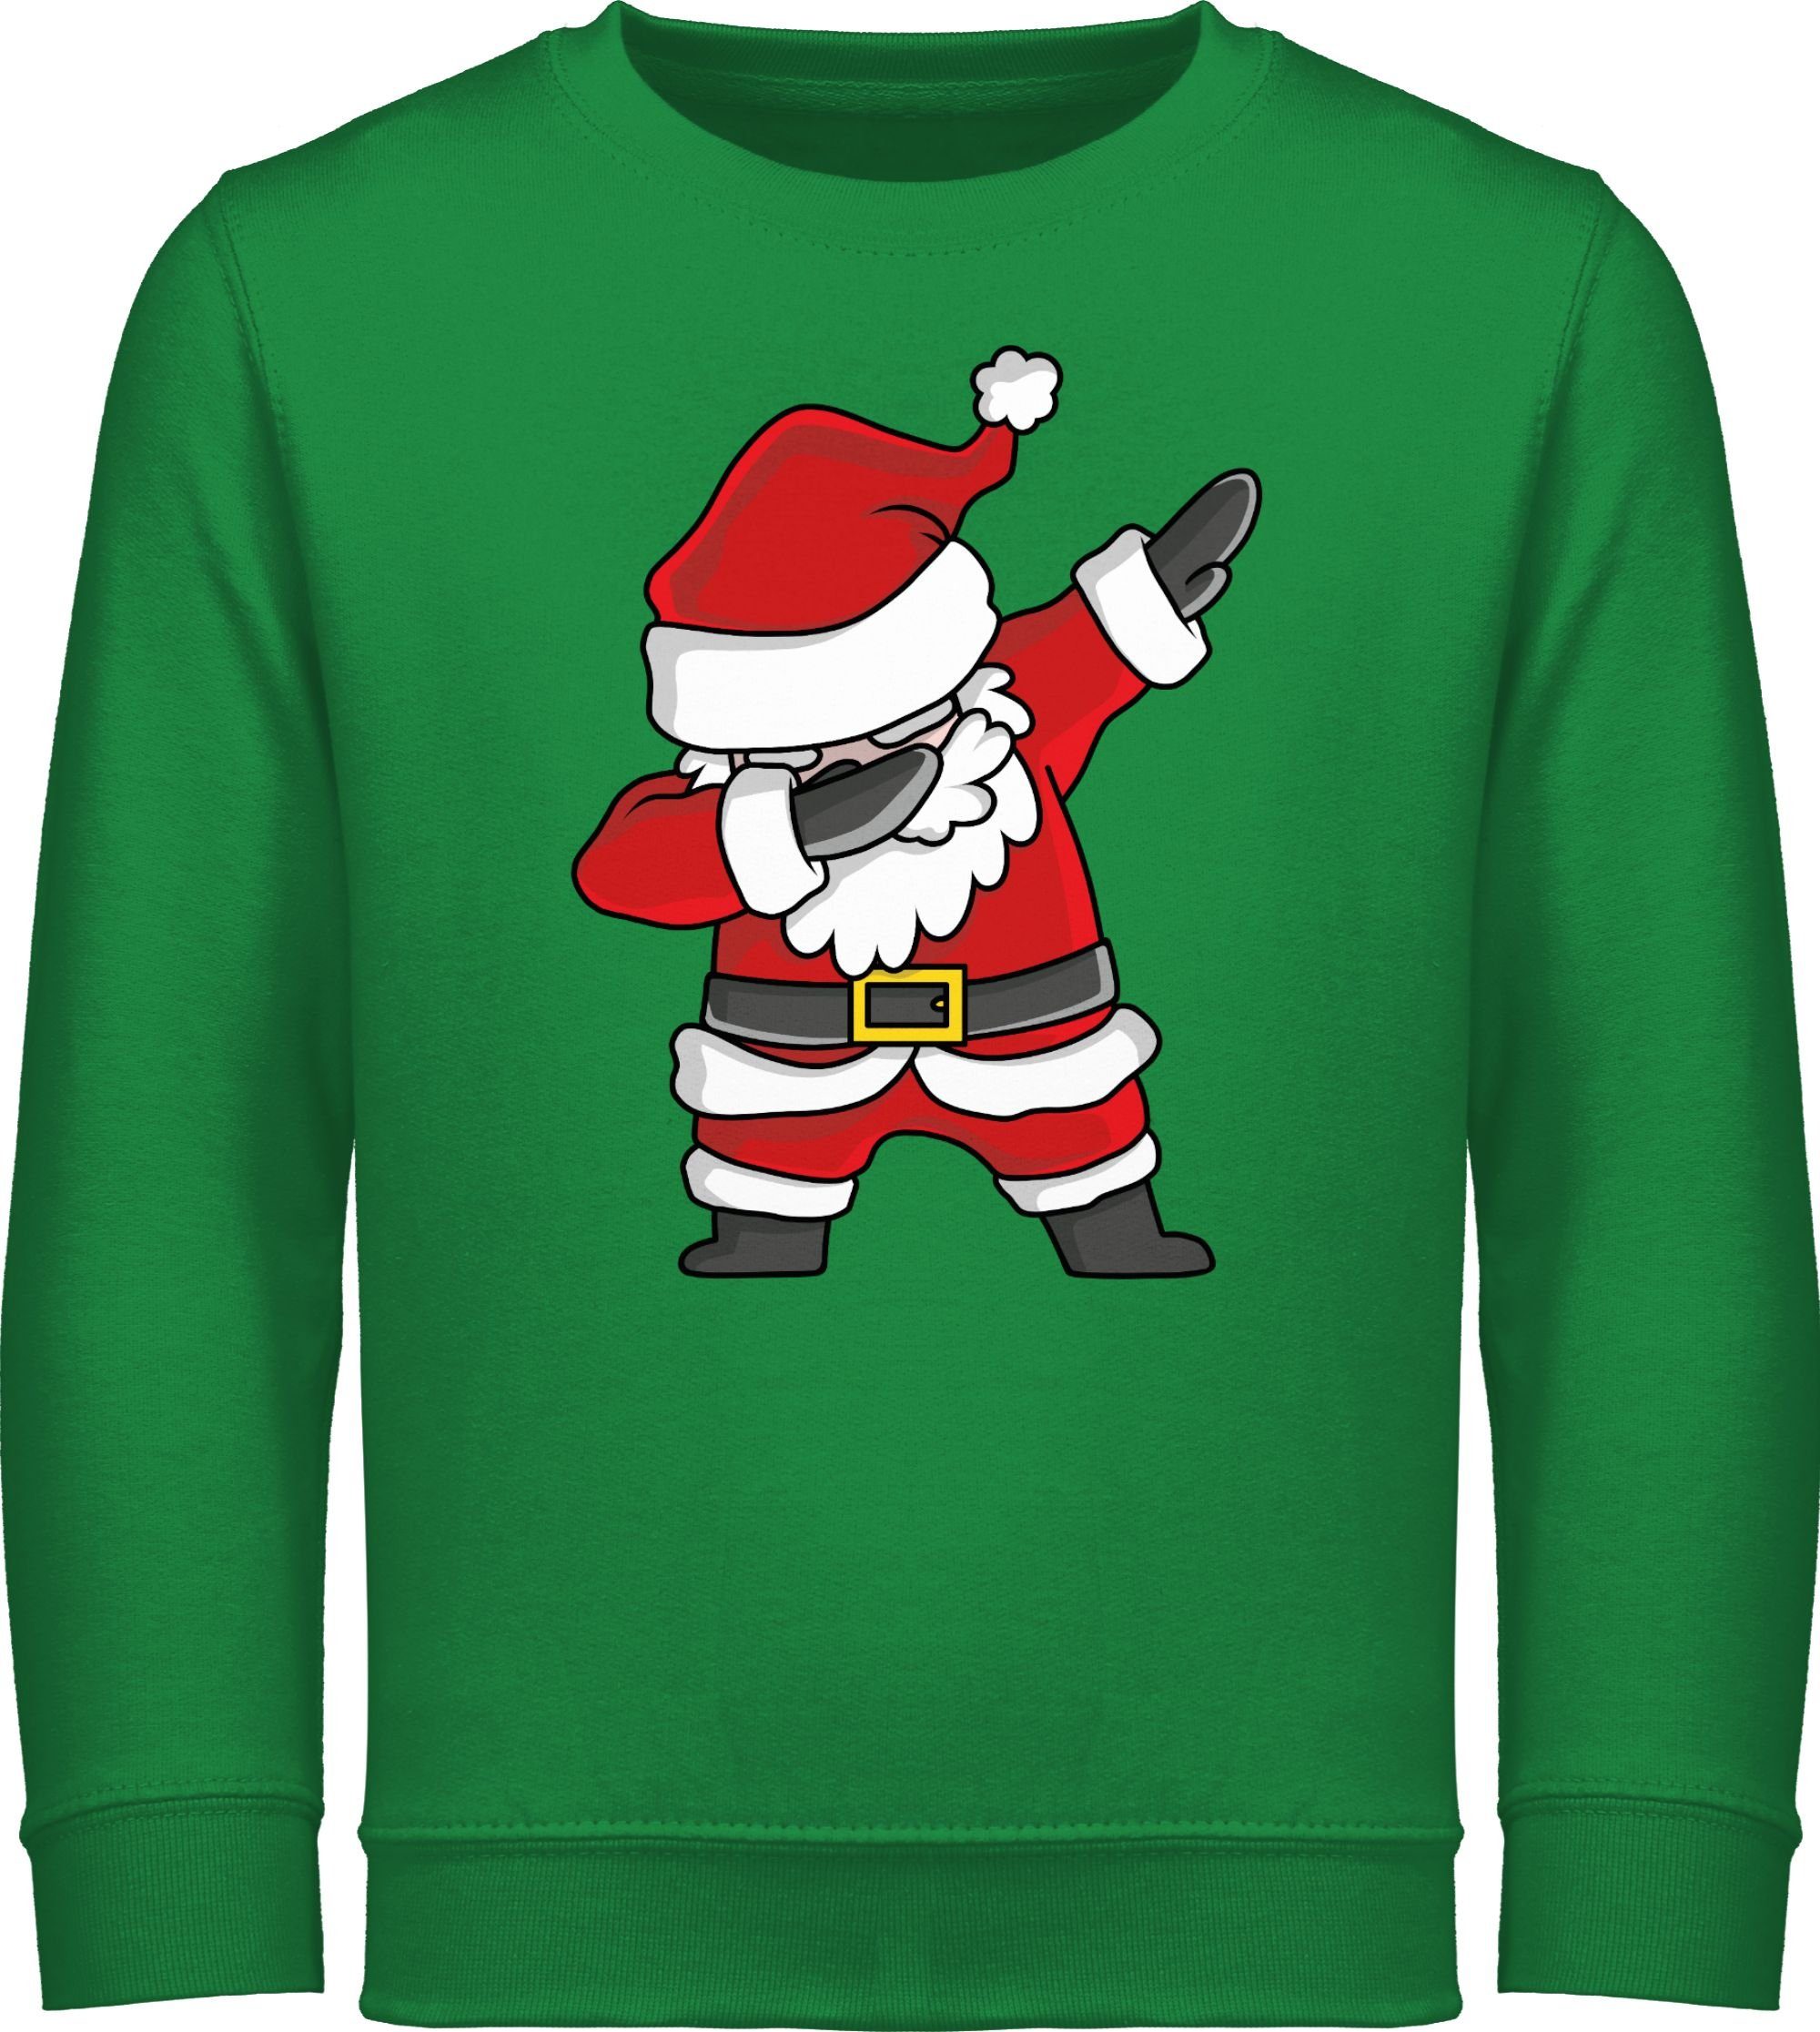 Shirtracer Sweatshirt »Dabbing Weihnachtsmann - Weihnachten Kleidung Kinder  - Kinder Premium Pullover« weihnachtssweatshirt - pullover weihnachtsmotiv  - weihnachtsoutfit online kaufen | OTTO